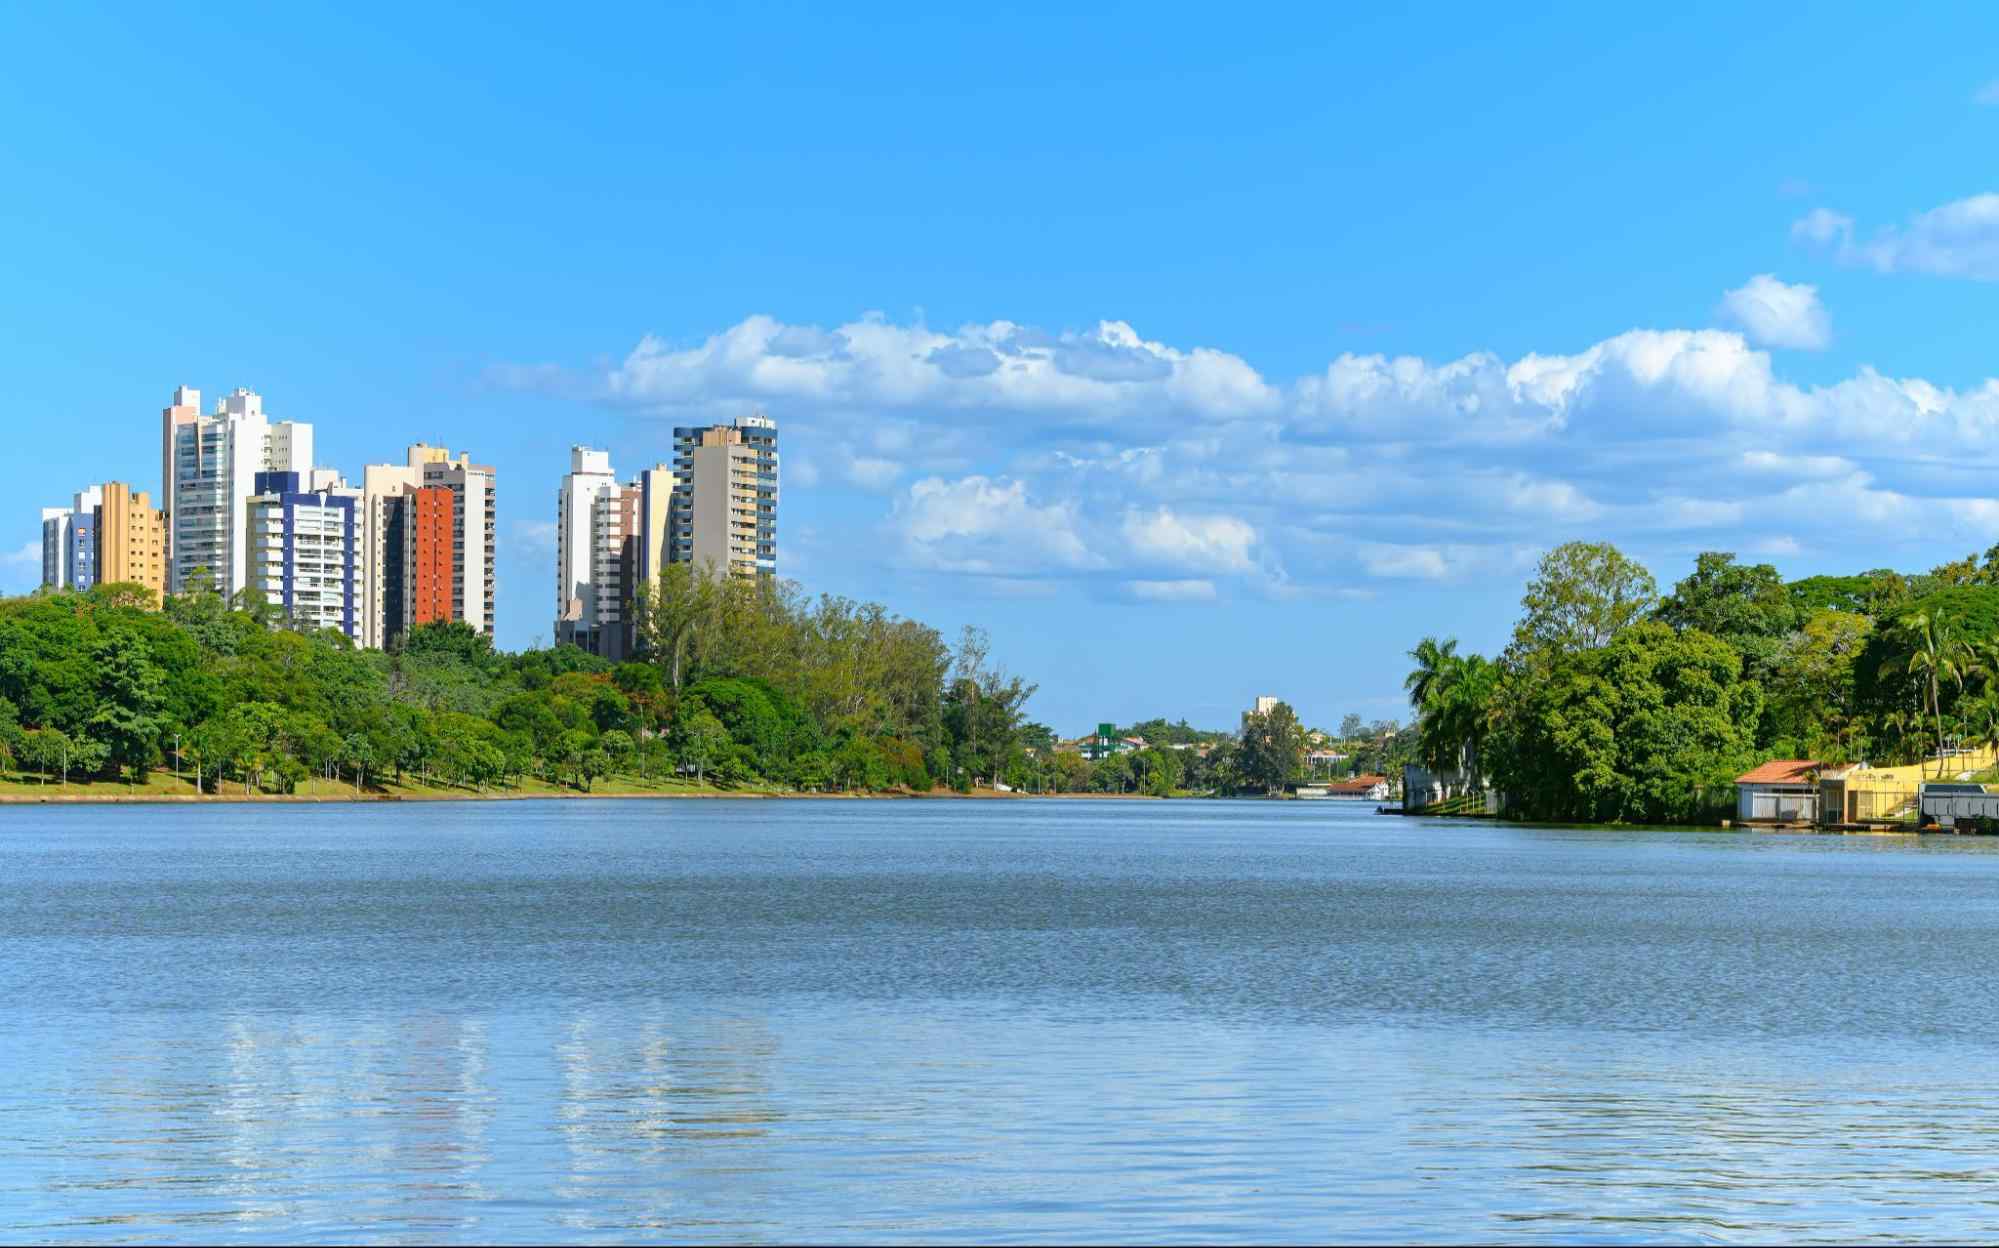 Paisagem da cidade de Londrina, com Lago Igapó em destaque na foto. Prédios de diferentes tamanhos ao lado esquerdo da foto, com árvores em frente aos prédios, na margem do lago